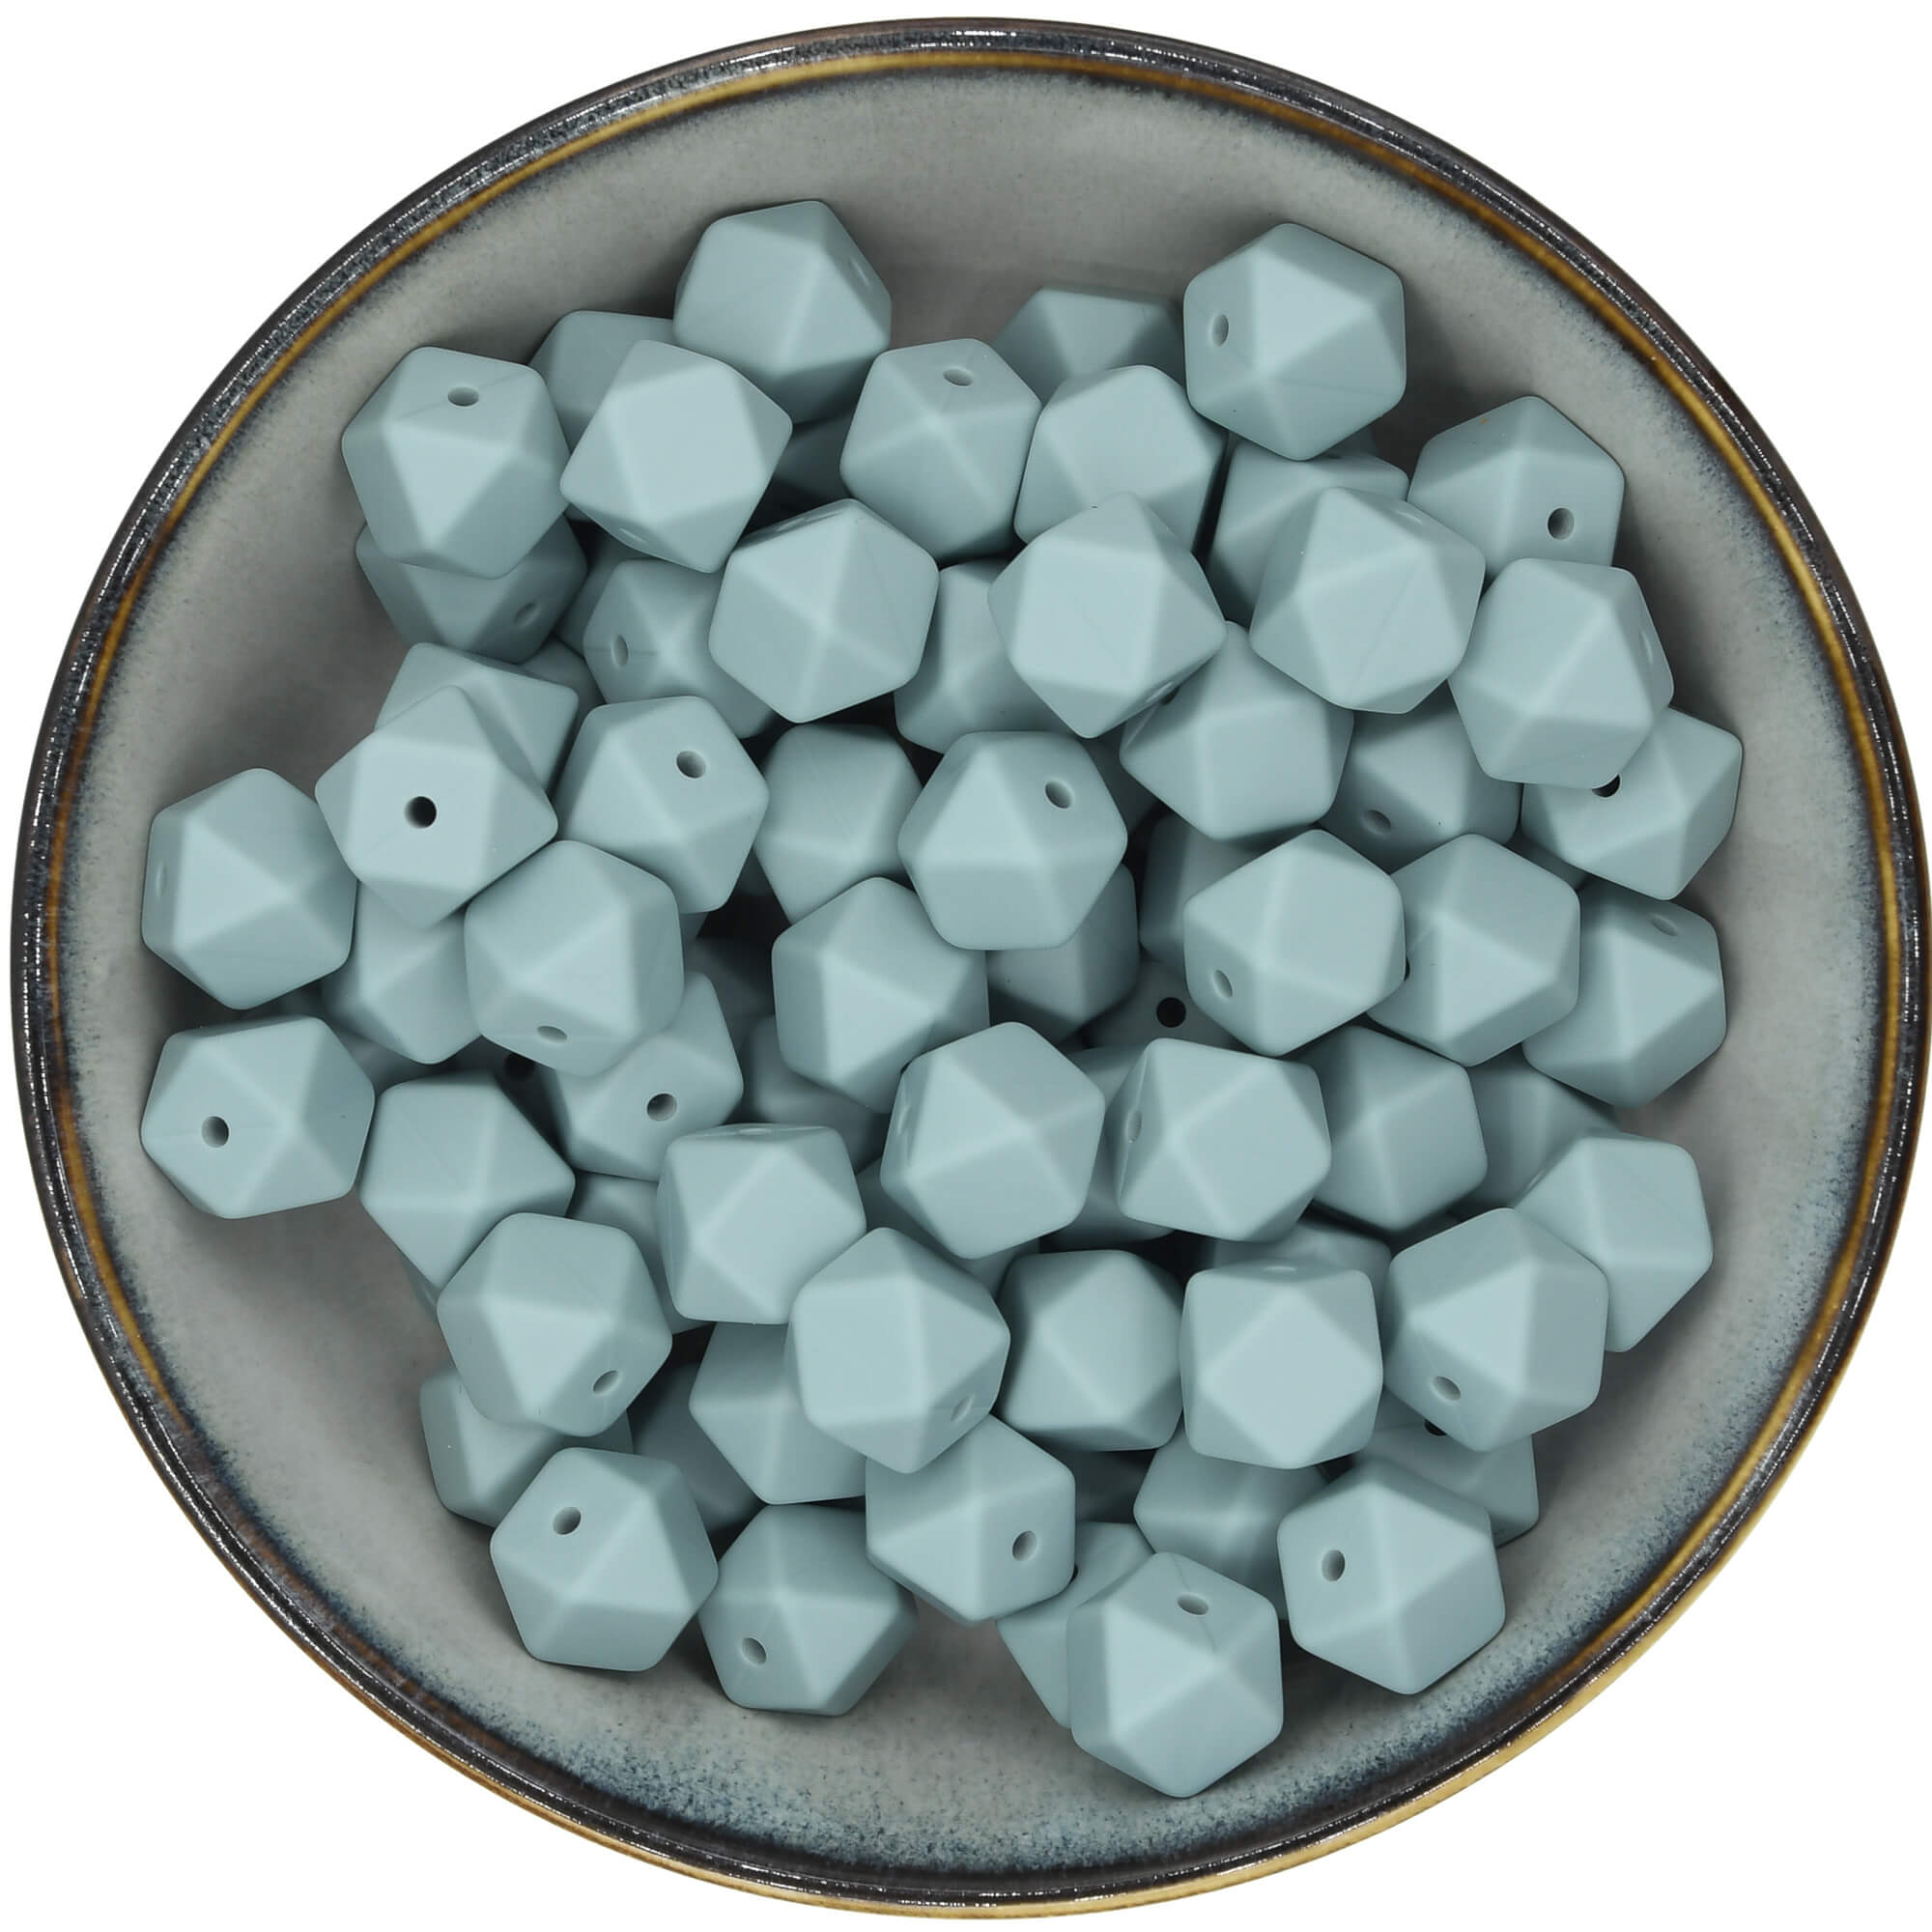 Siliconen mini-hexagons van 14 mm in de kleur Grijsblauw